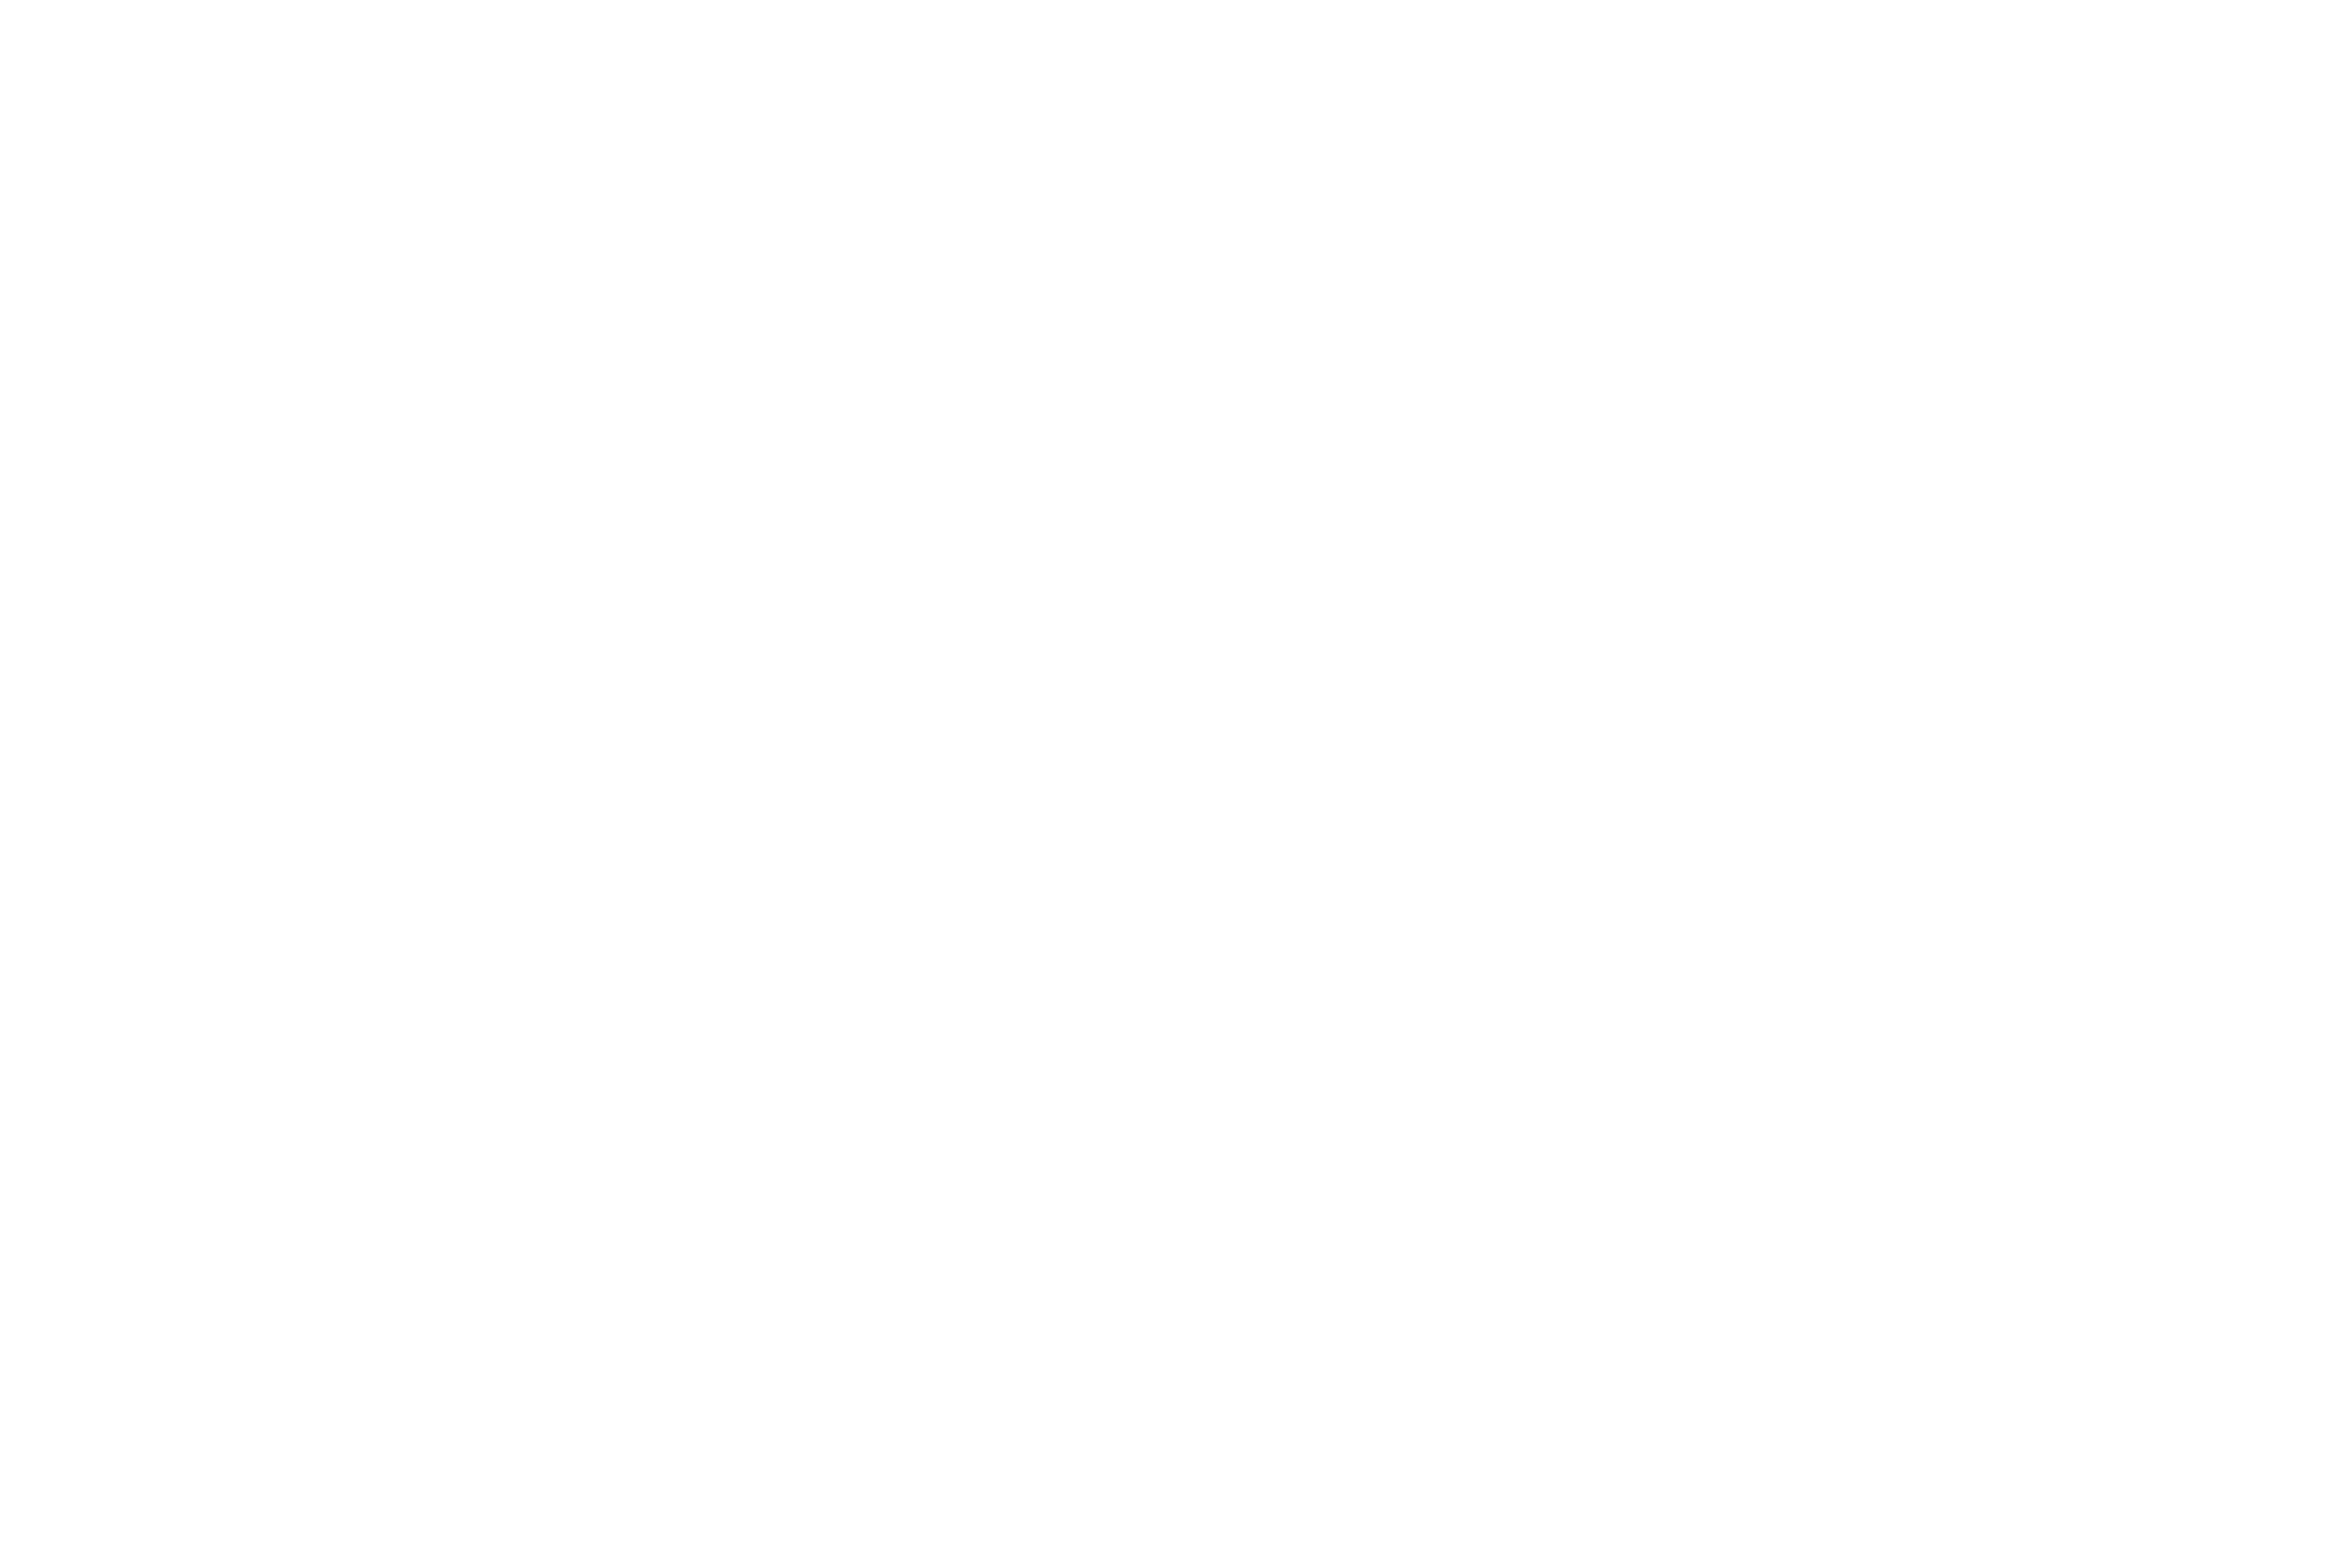 OKC Jazz Life